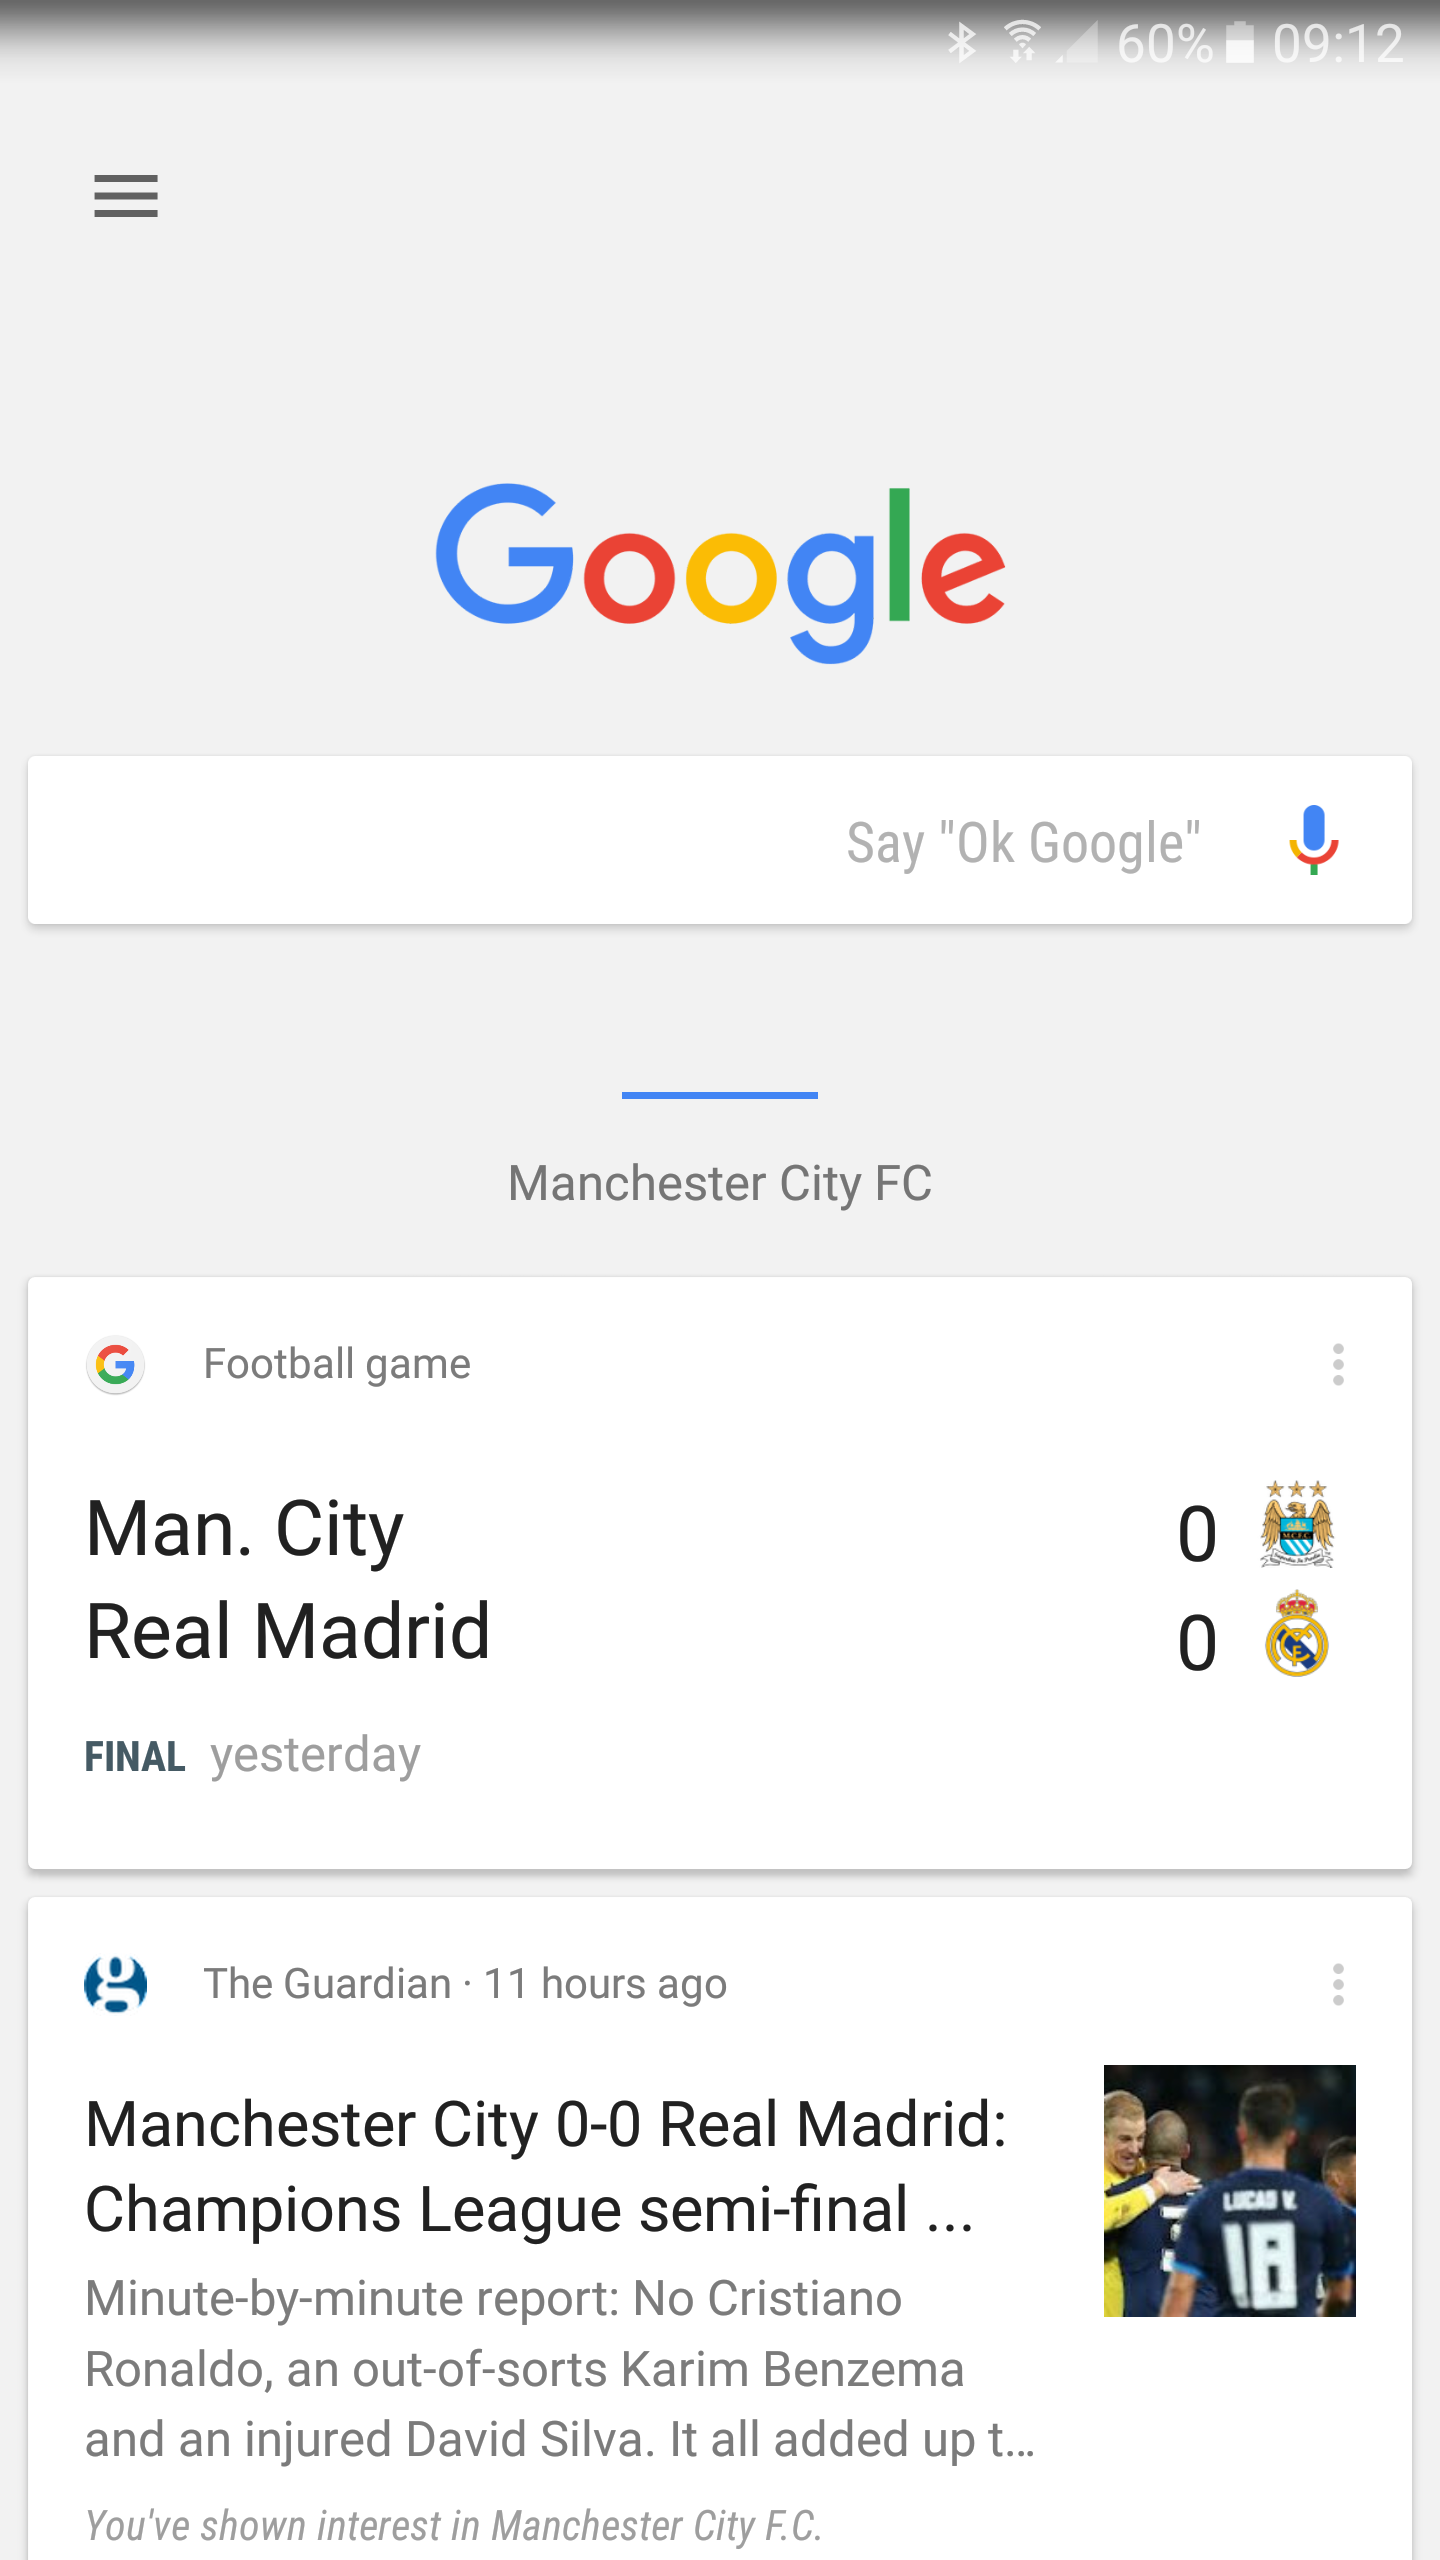 Jak nyní používám Google?